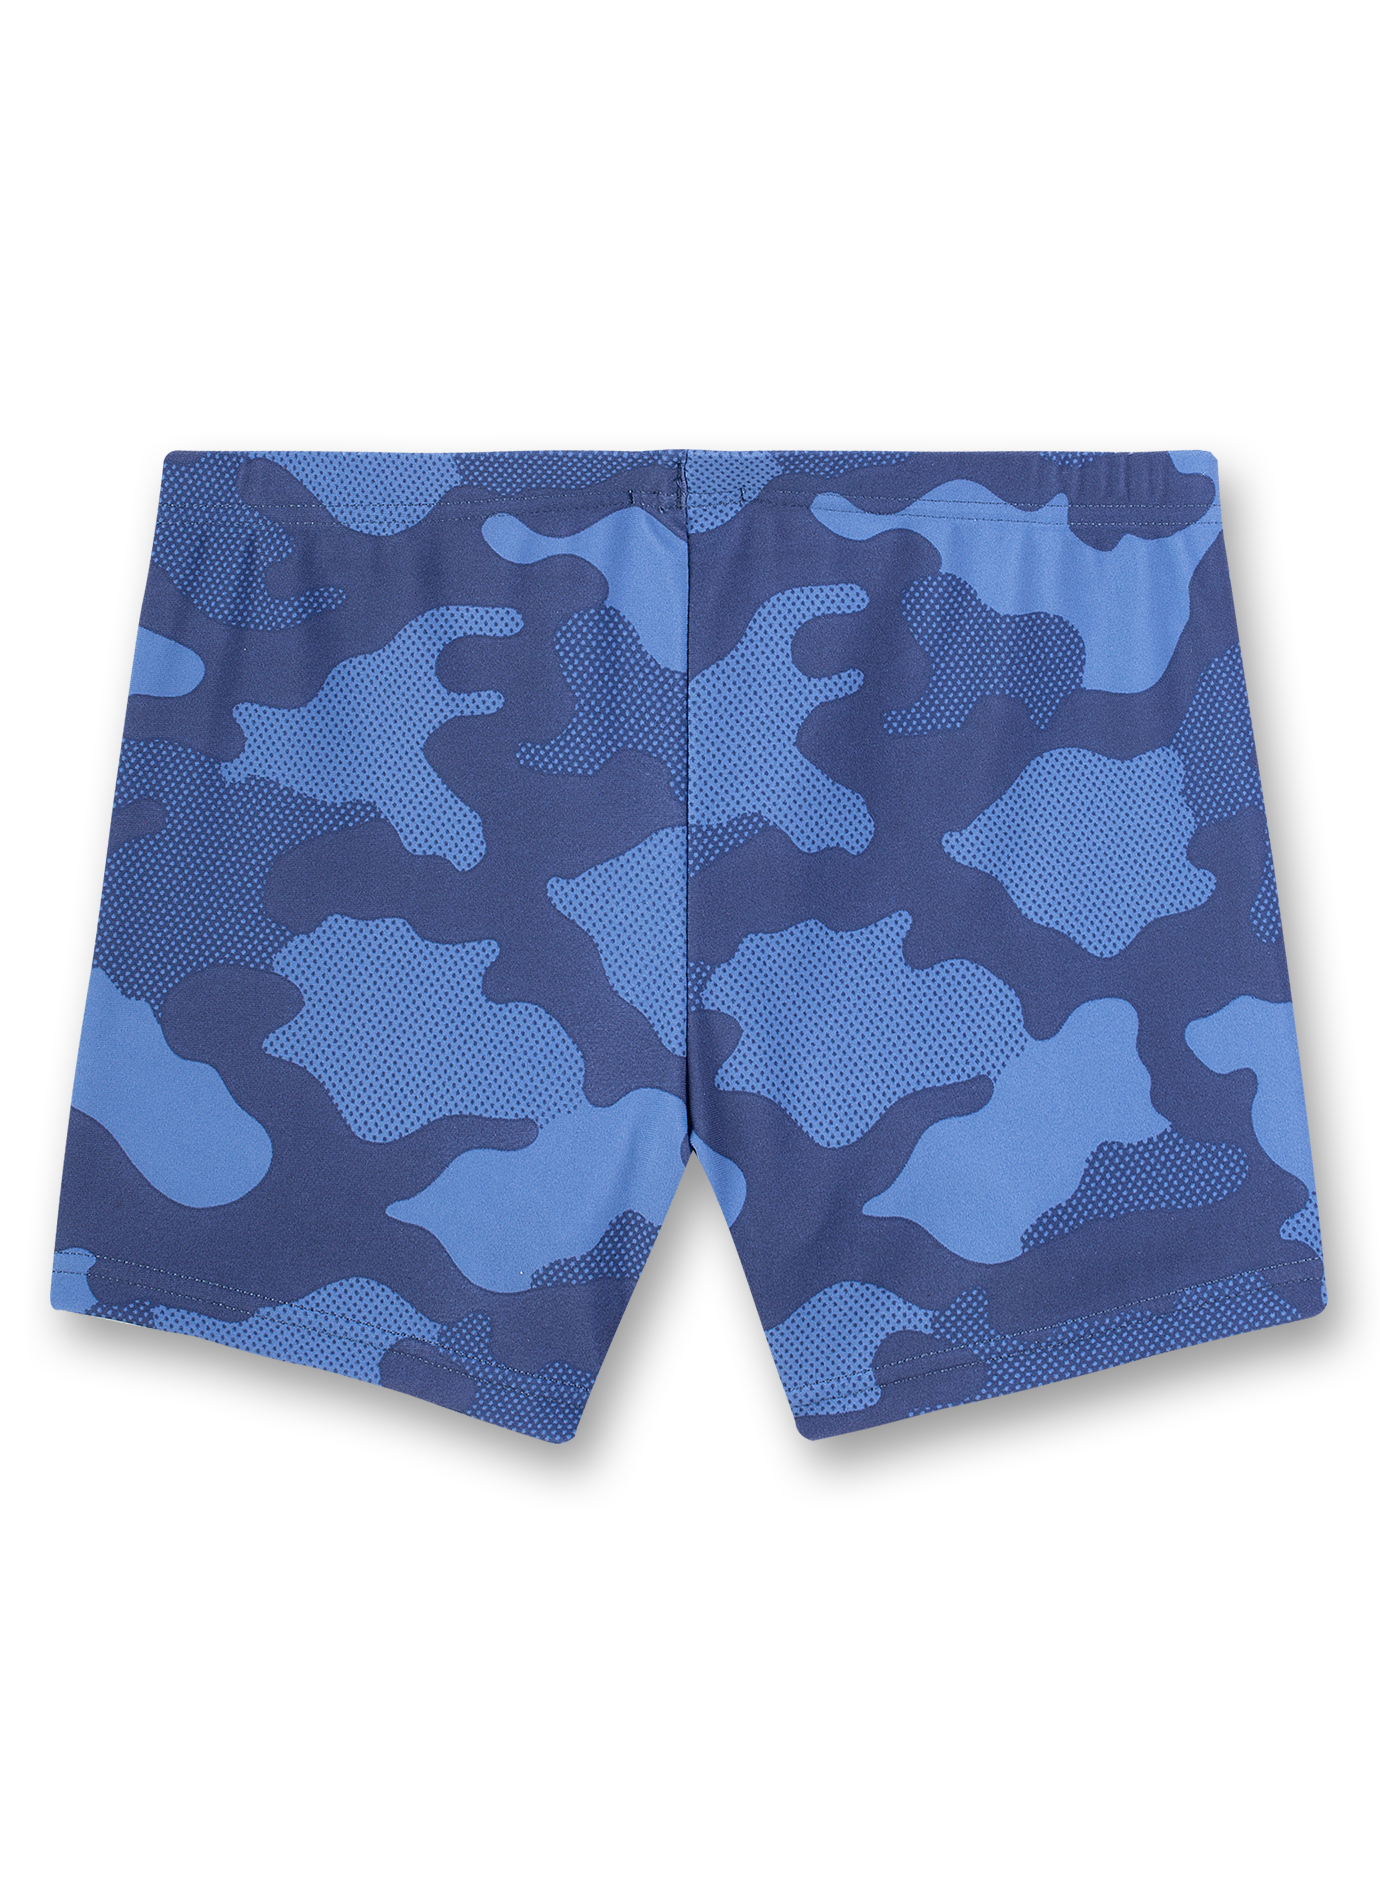 Jungen-Badehose Blau Camouflage